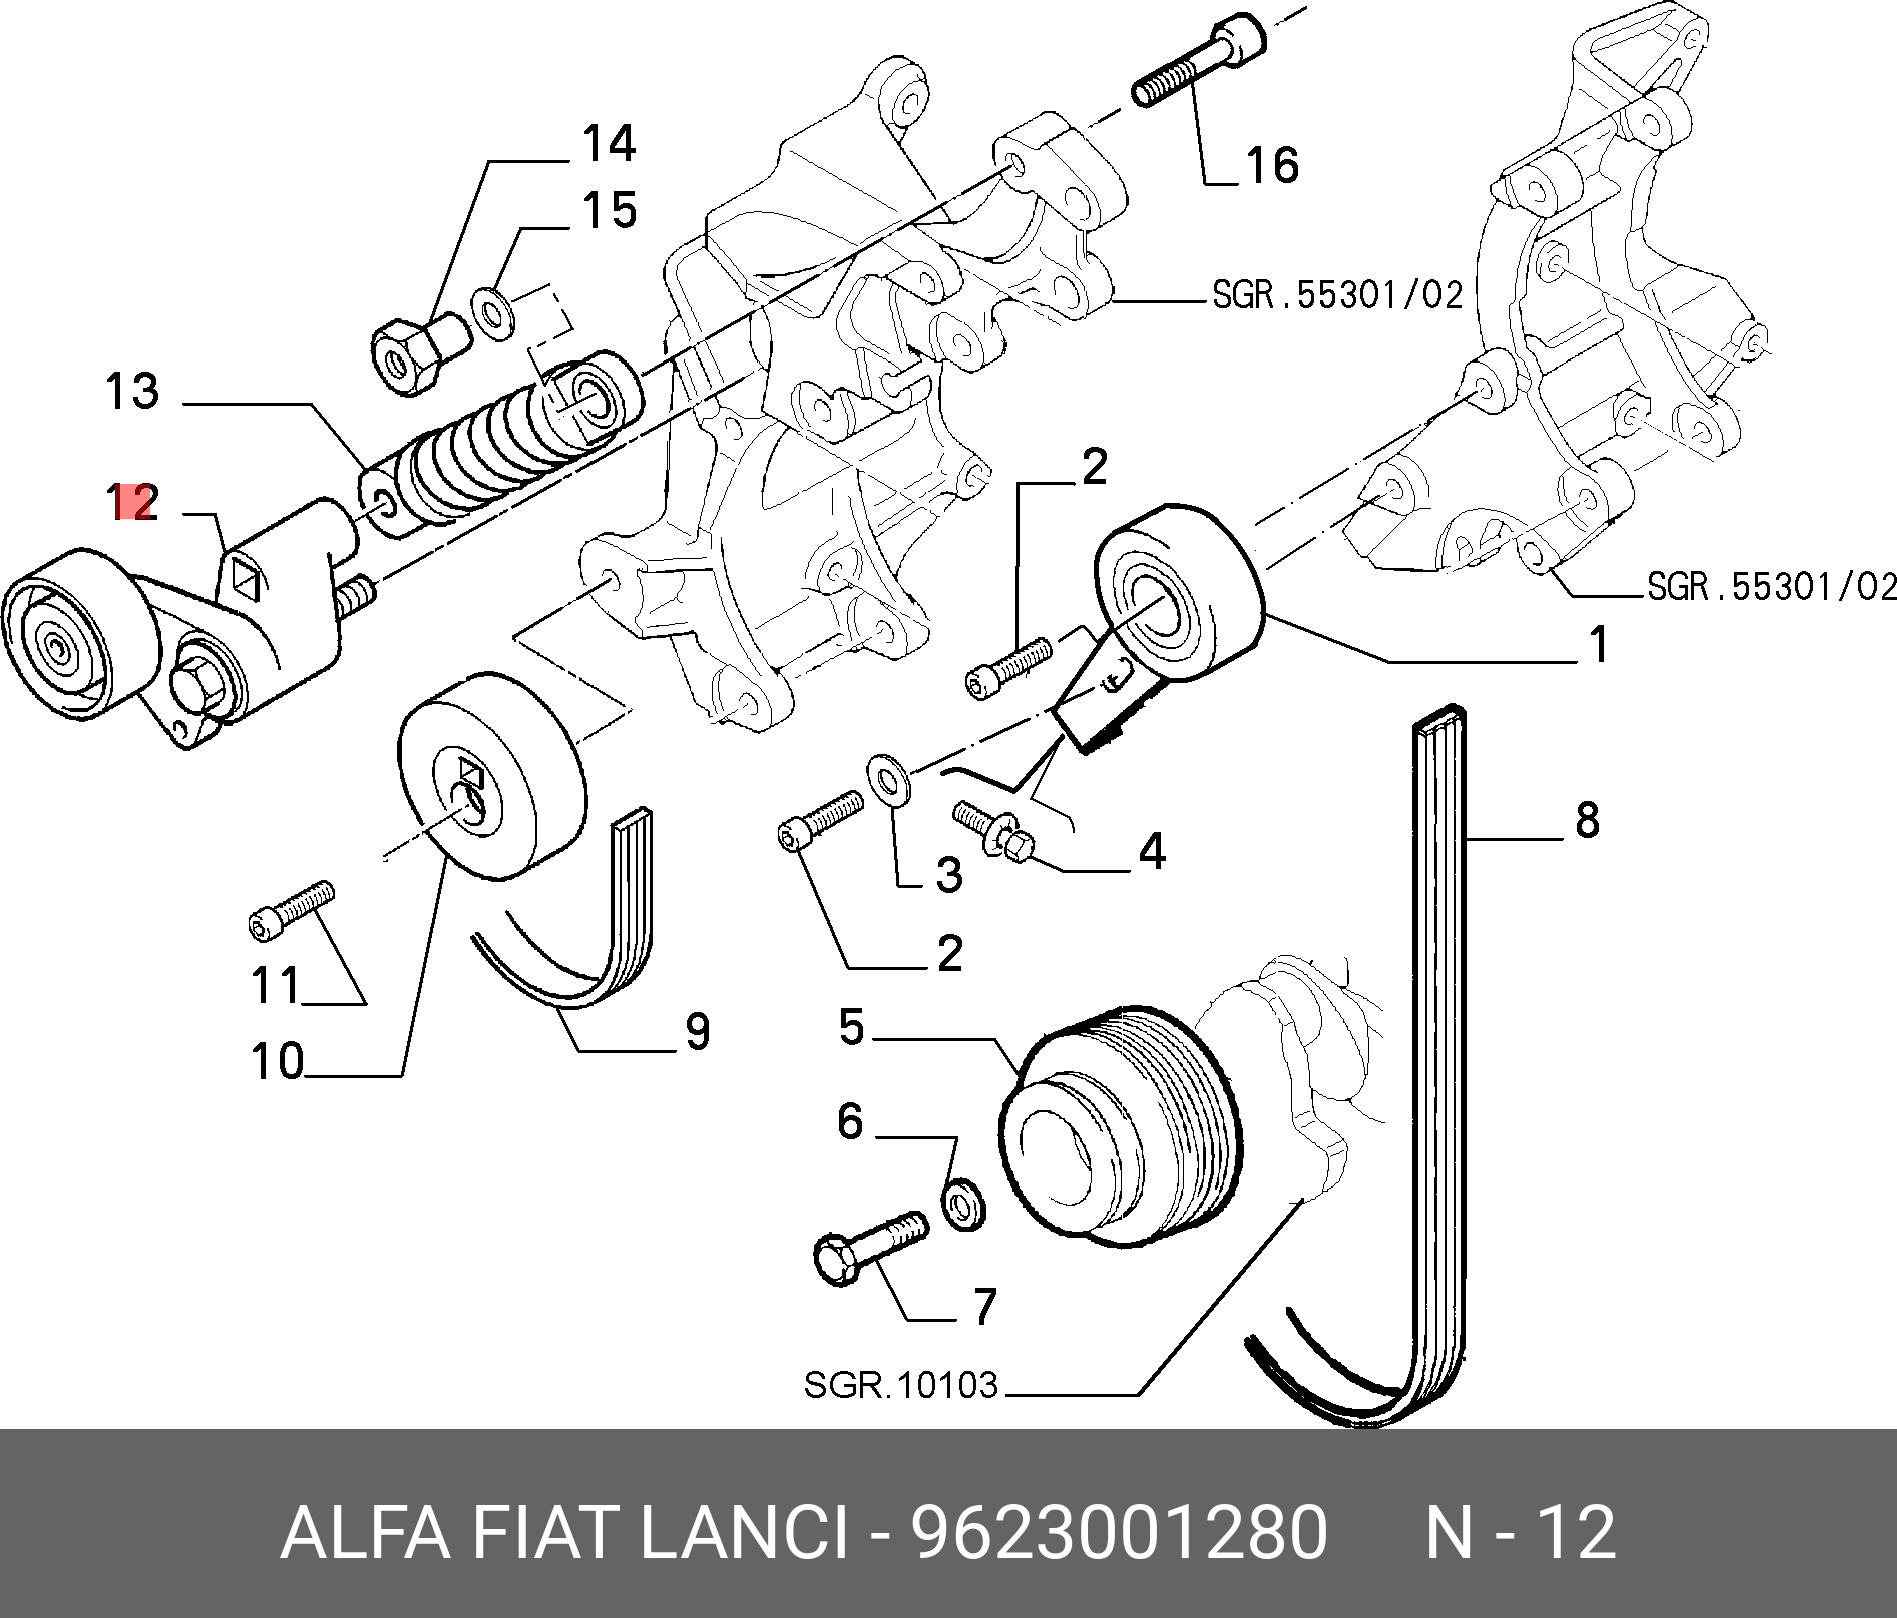 Ролик натяжной - Fiat/Alfa/Lancia 9623001280